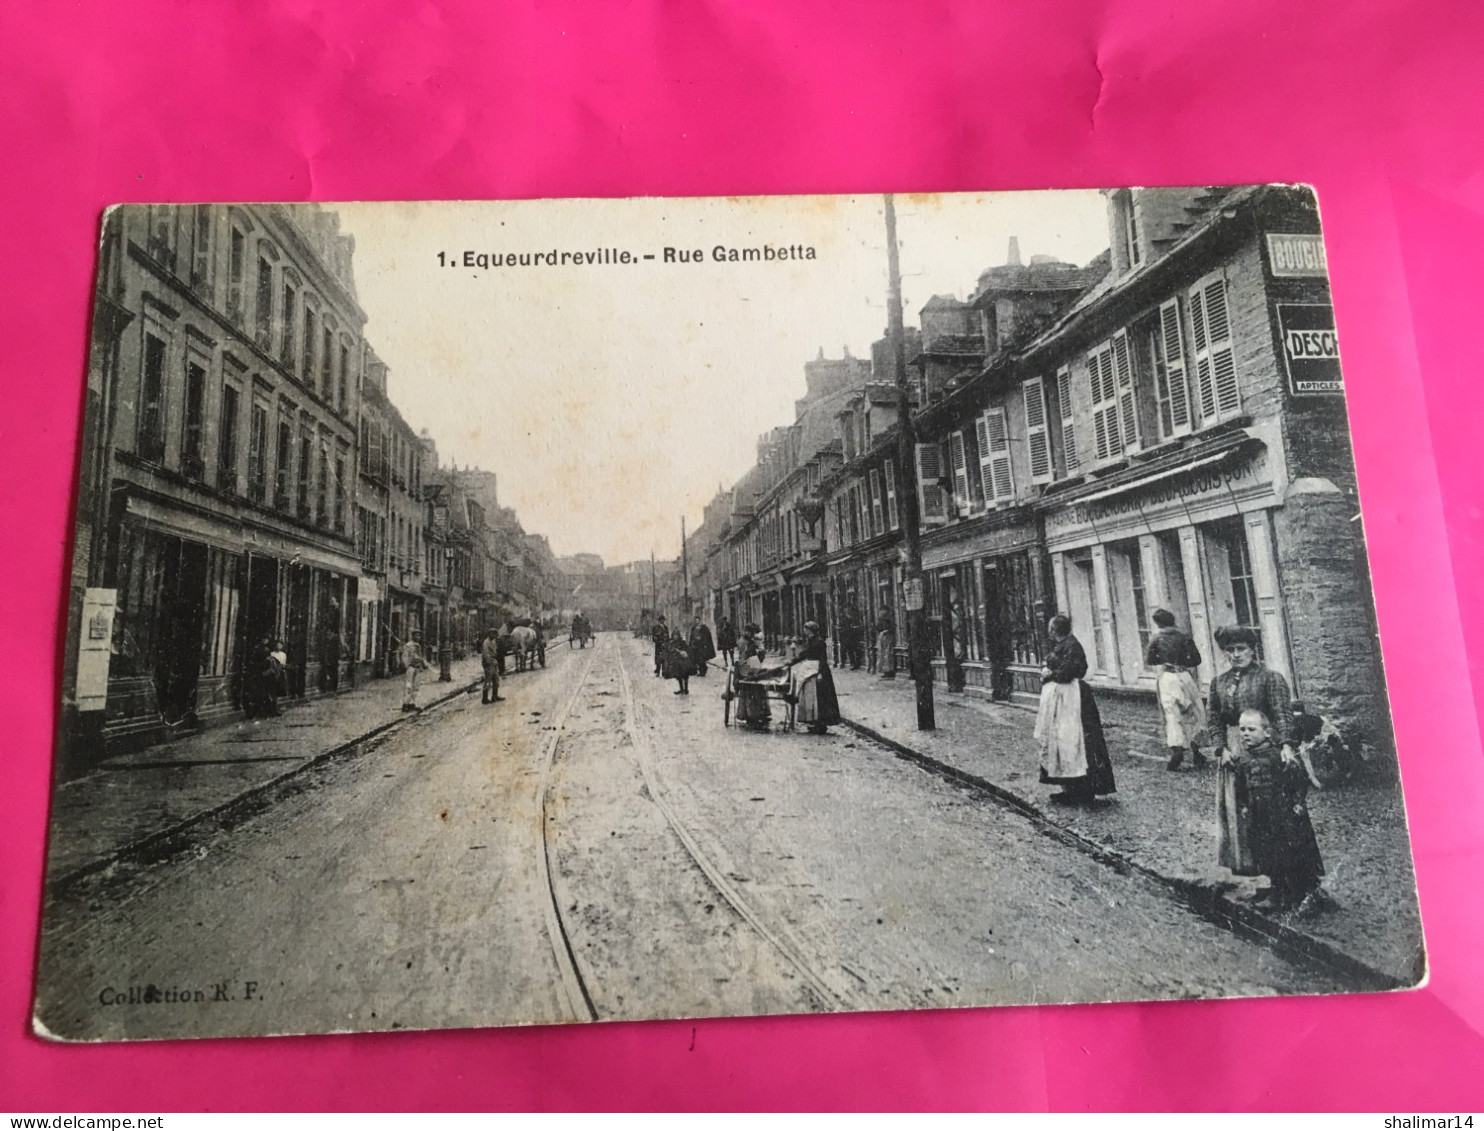 Rue Gambetta - Equeurdreville